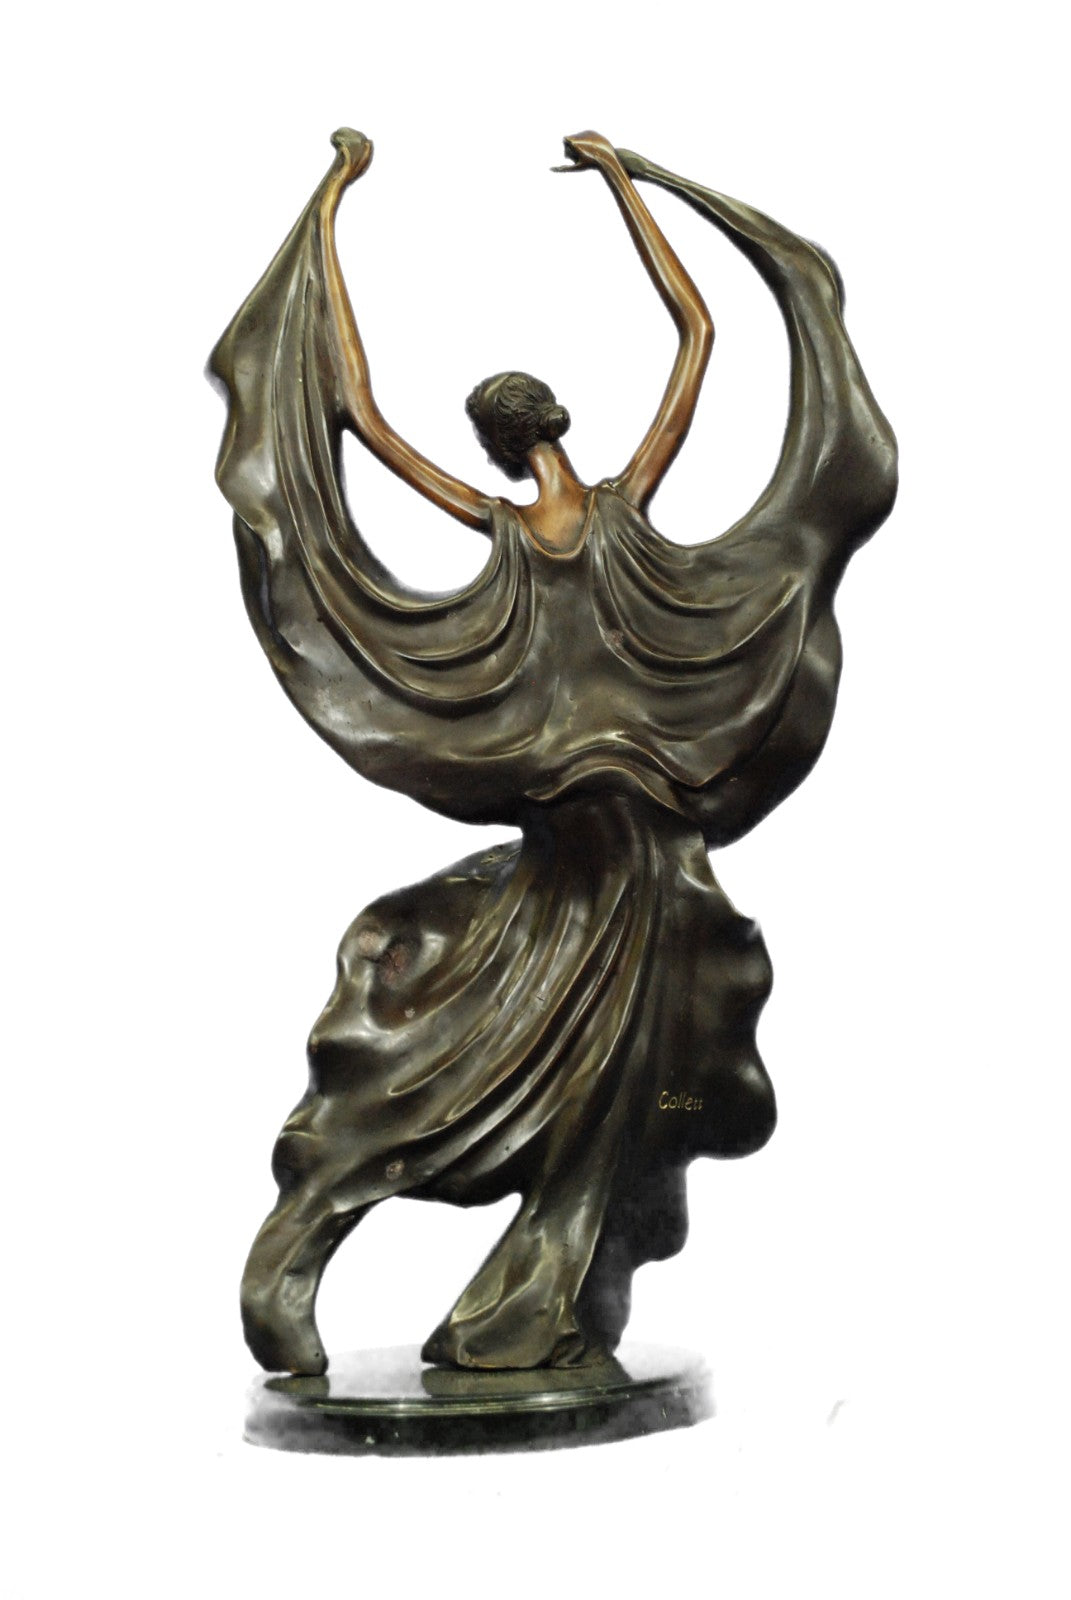 Art Deco Bronze Statue Nude Actress Dancer Jazz Club Italian Artist Figurine